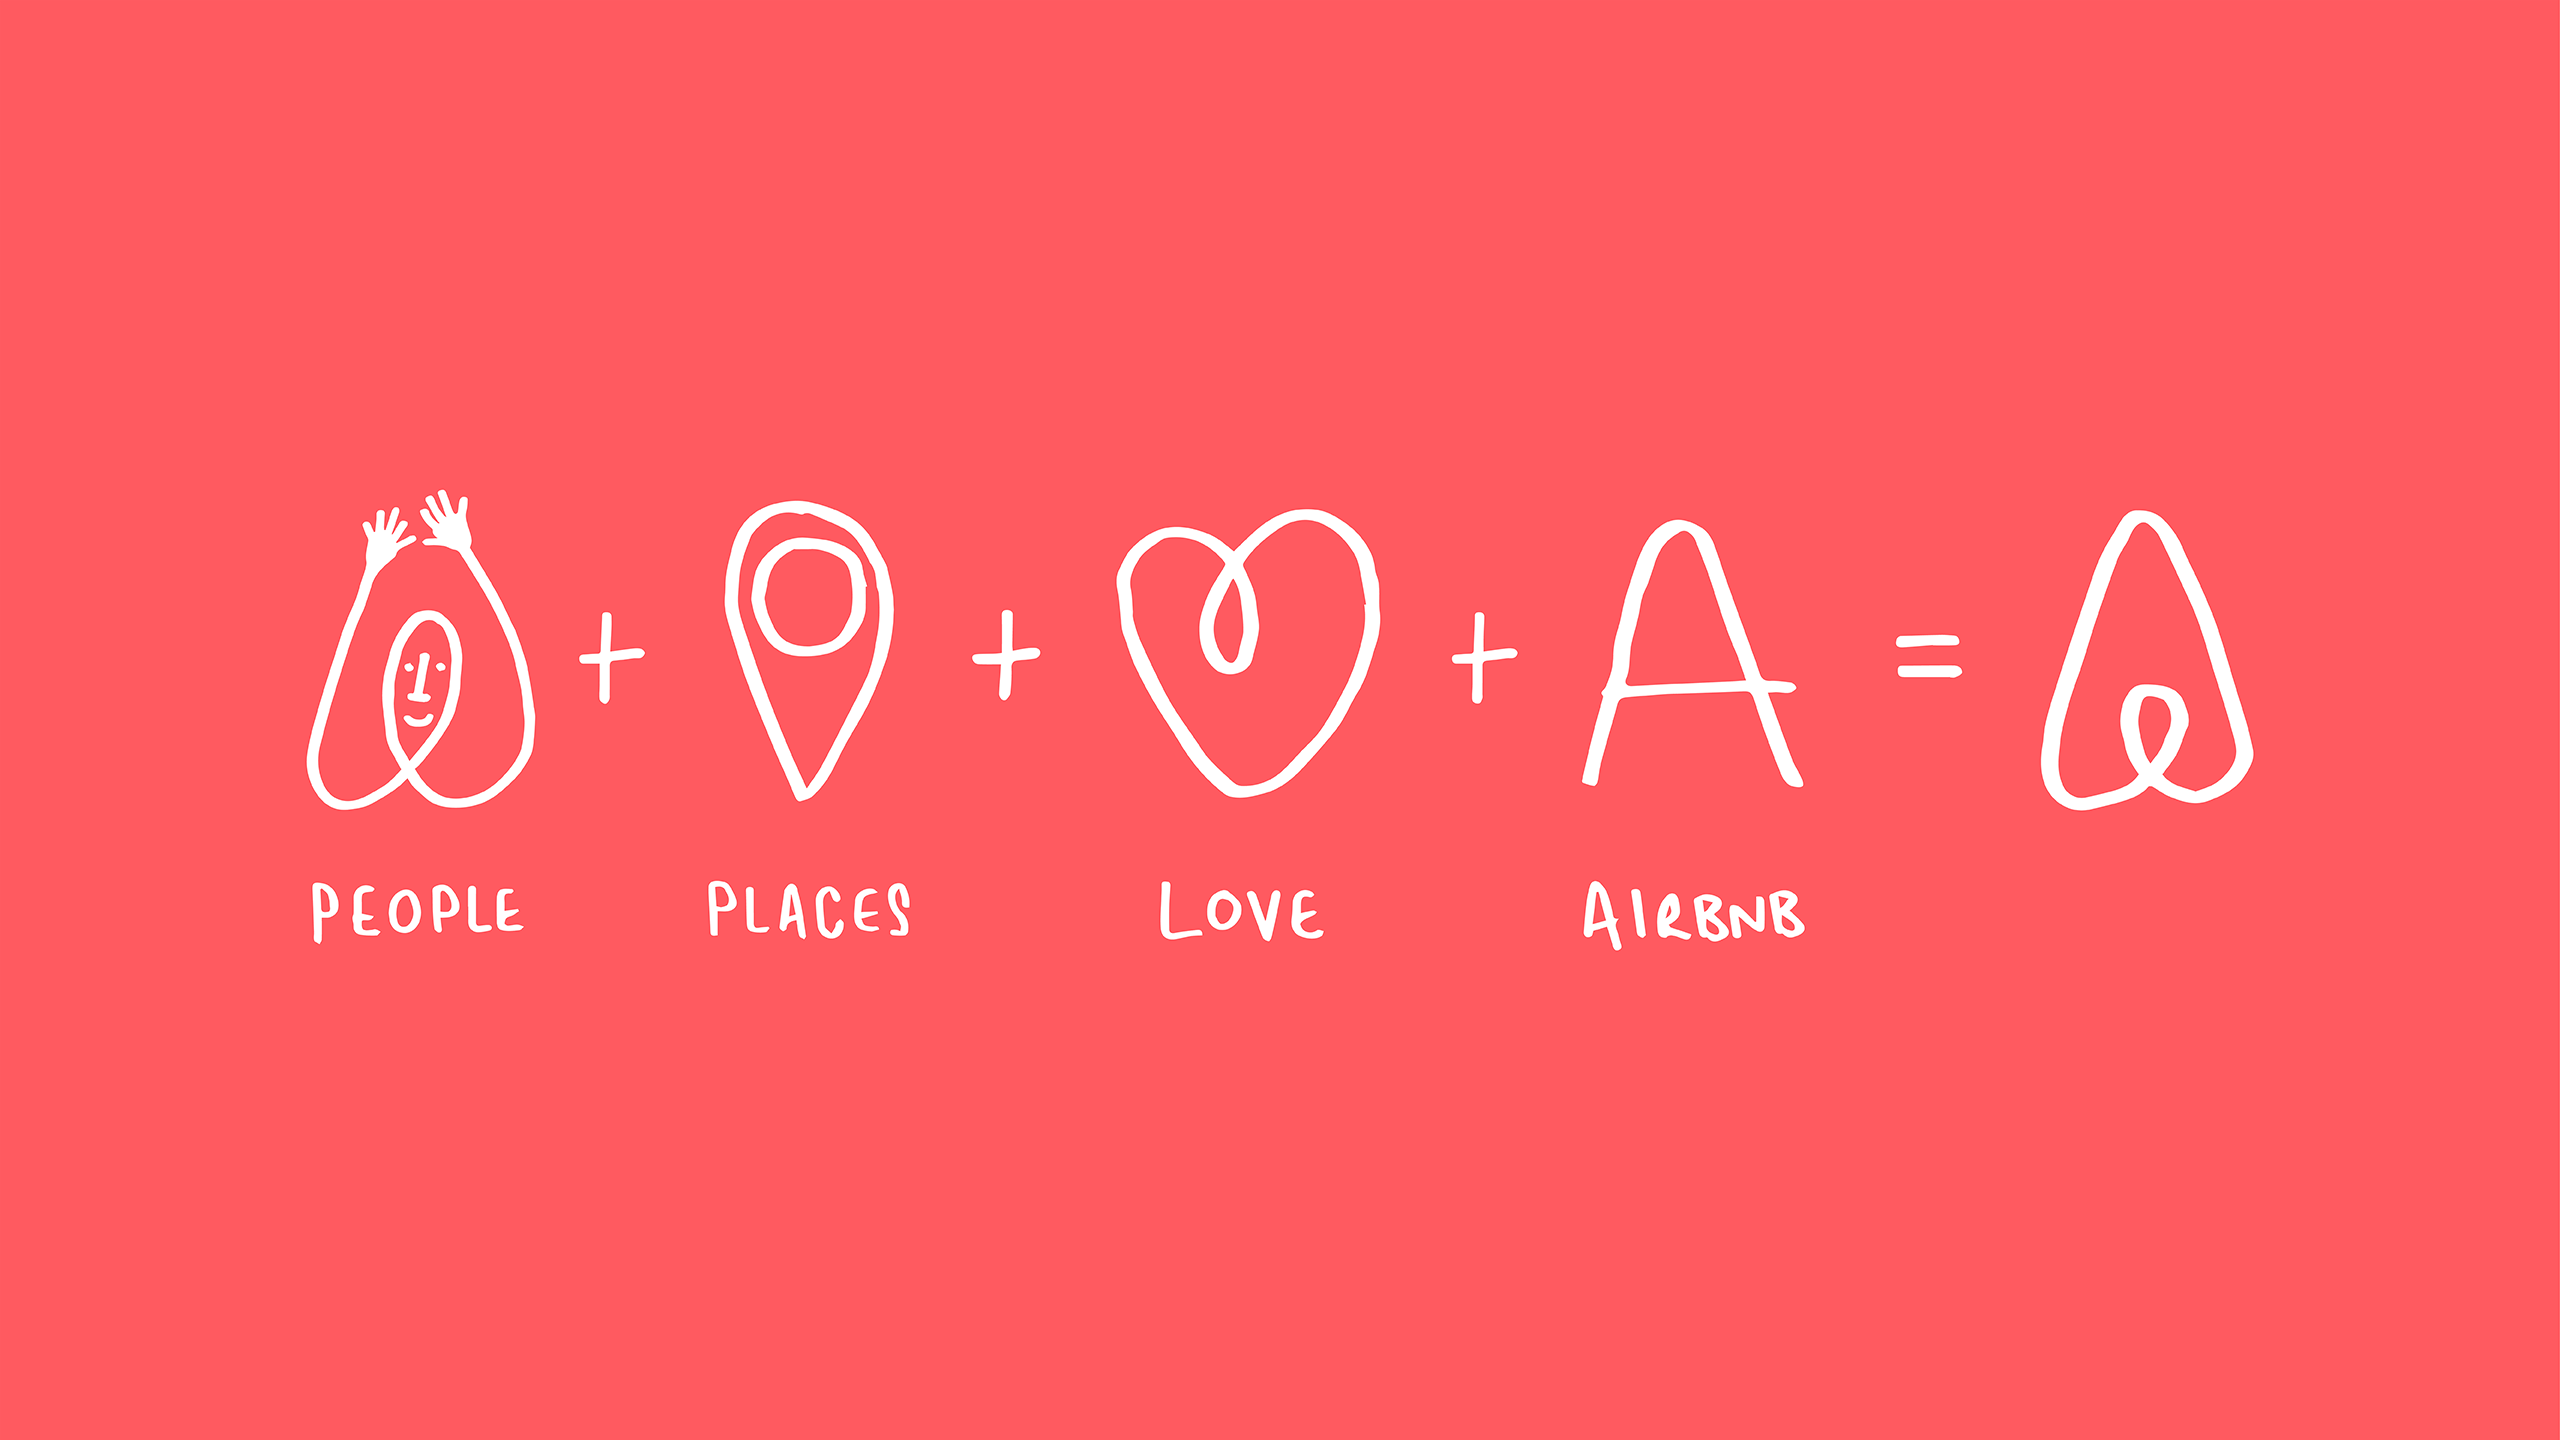 O gif é divido em três momentos, o primeiro mostra o rascunho do logo da airbnb apelidado de “belo”, o segundo mostra figuras que representam pessoas, lugares, amor, e A (de airbnb), e o terceiro o logo oficial da marca